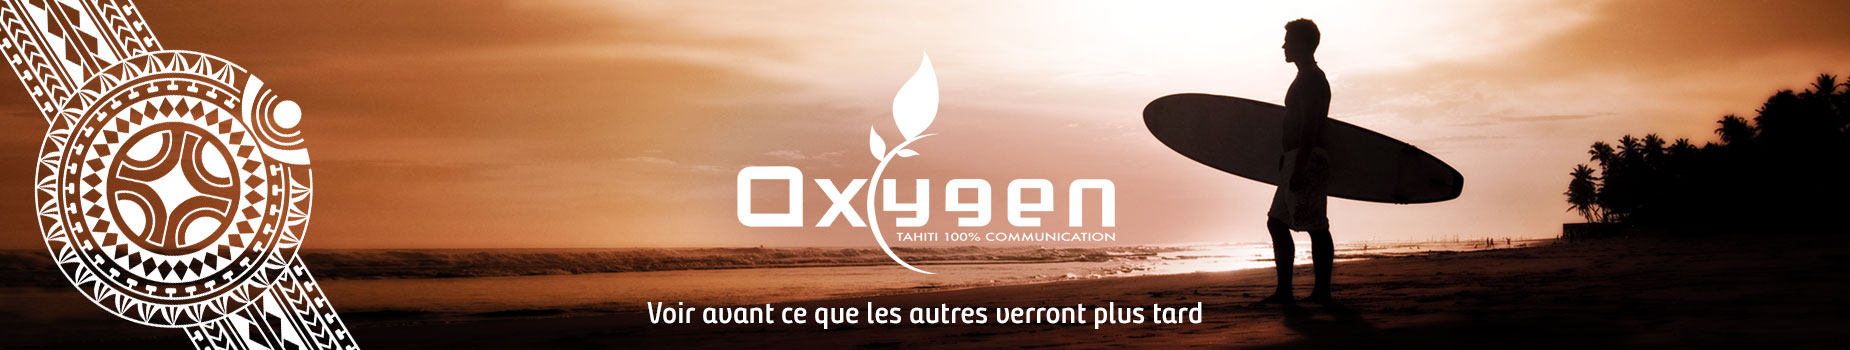 bandeaux-web-oxygen-new-1